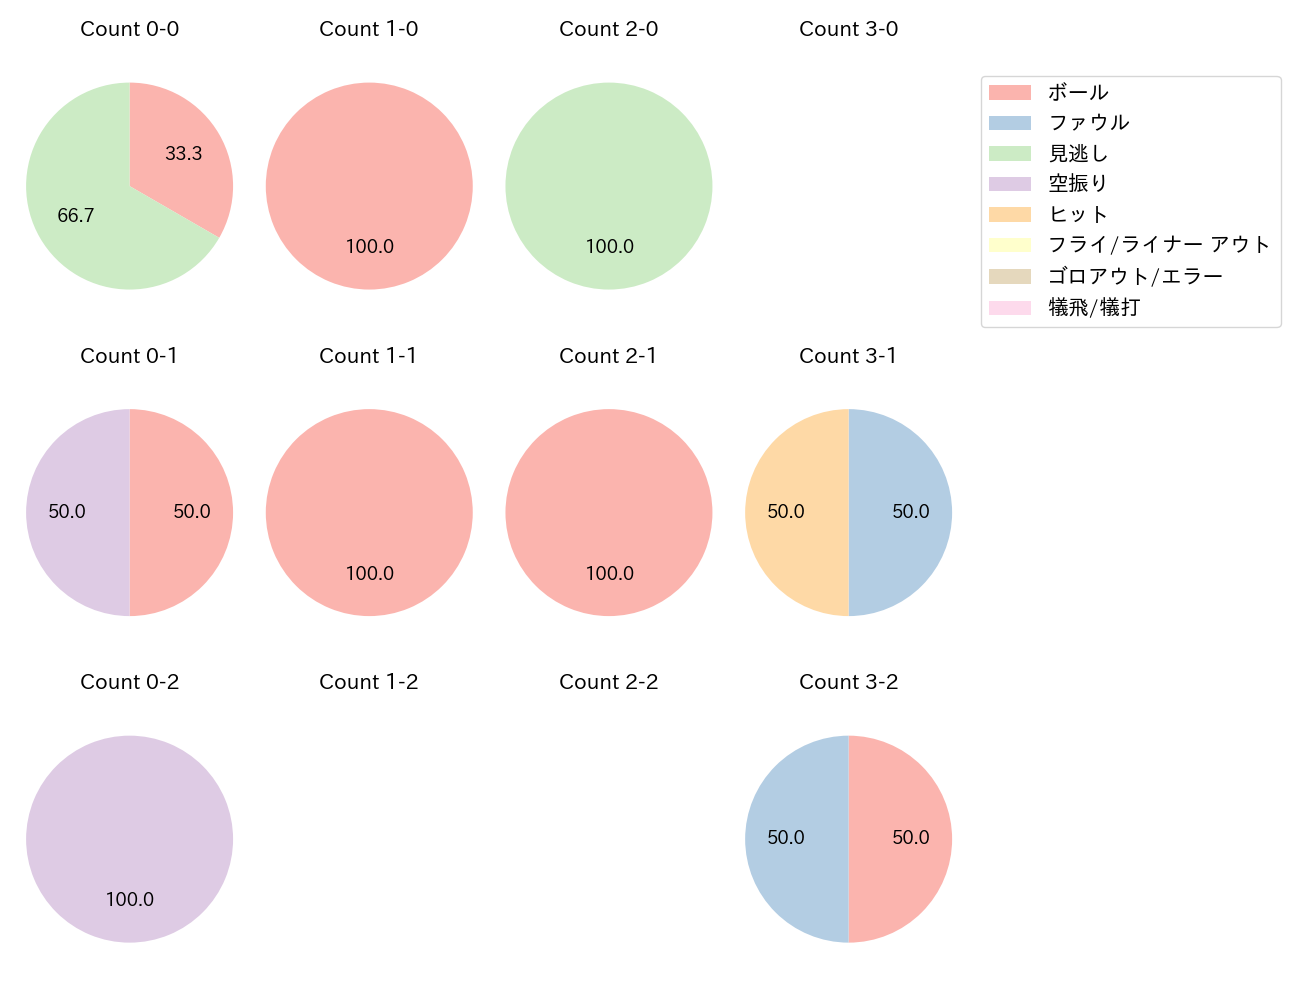 益子 京右の球数分布(2022年オープン戦)